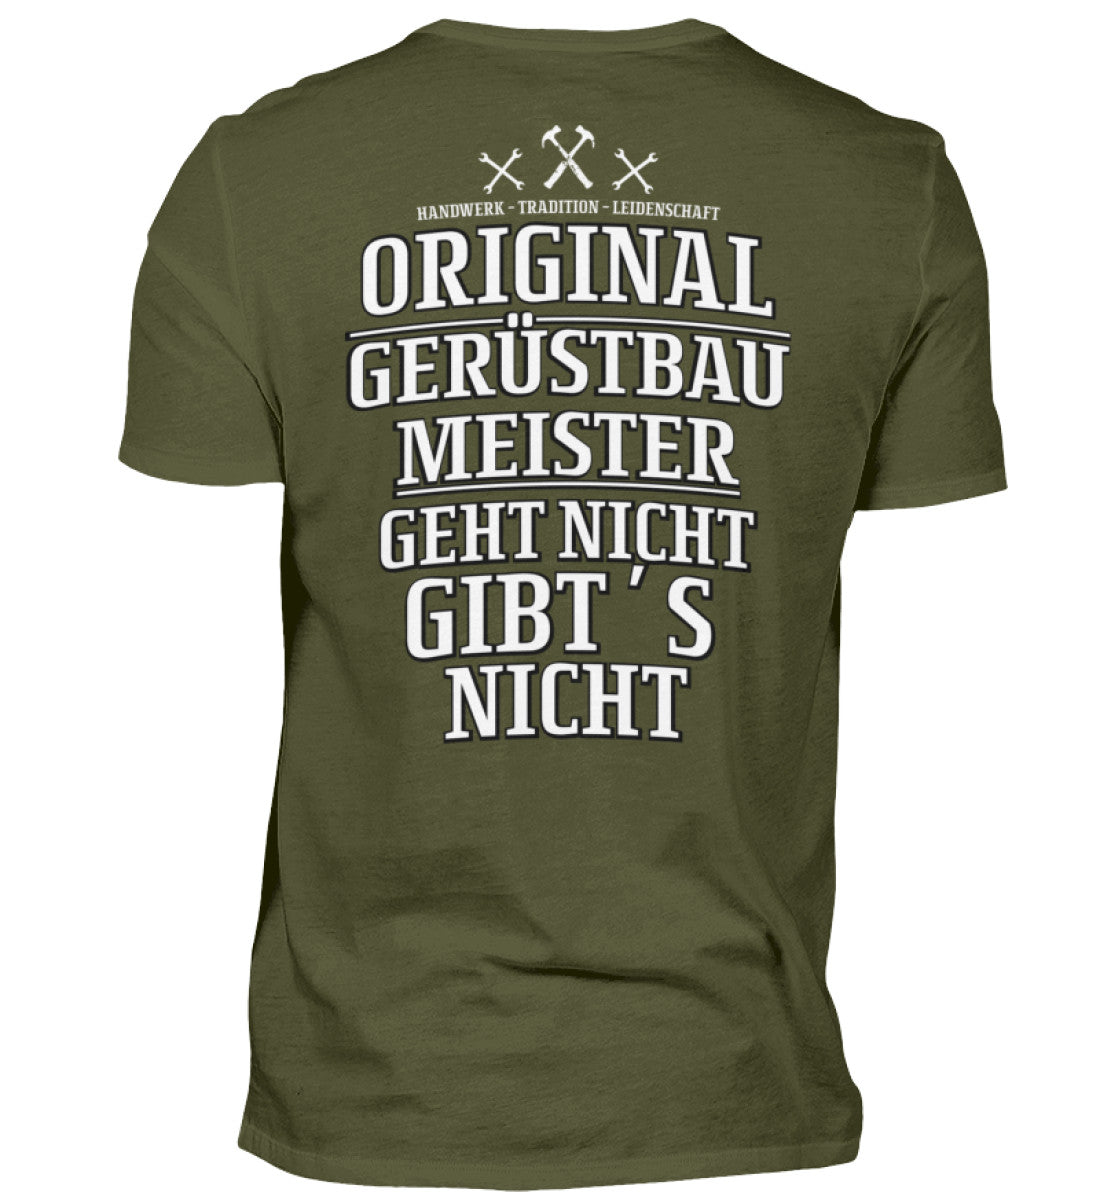 Gerüstbauer T-Shirt / Gerüstbau Meister €24.95 Gerüstbauer - Shop >>